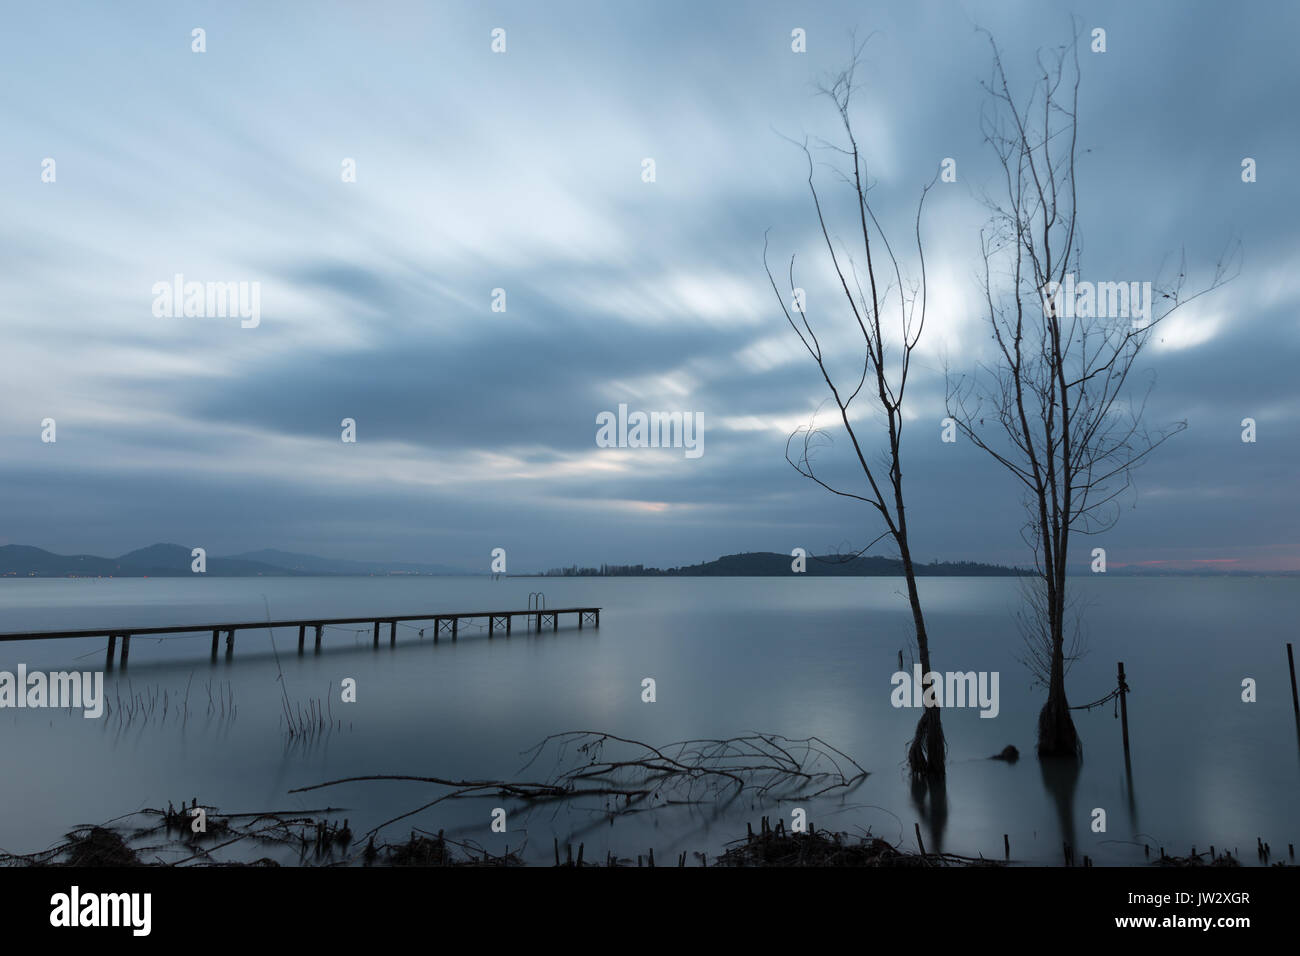 Einige der Skelettmuskulatur Bäume und ein Pier an einem See in der Abenddämmerung, mit perfekt noch Wasser und ziehenden Wolken Stockfoto